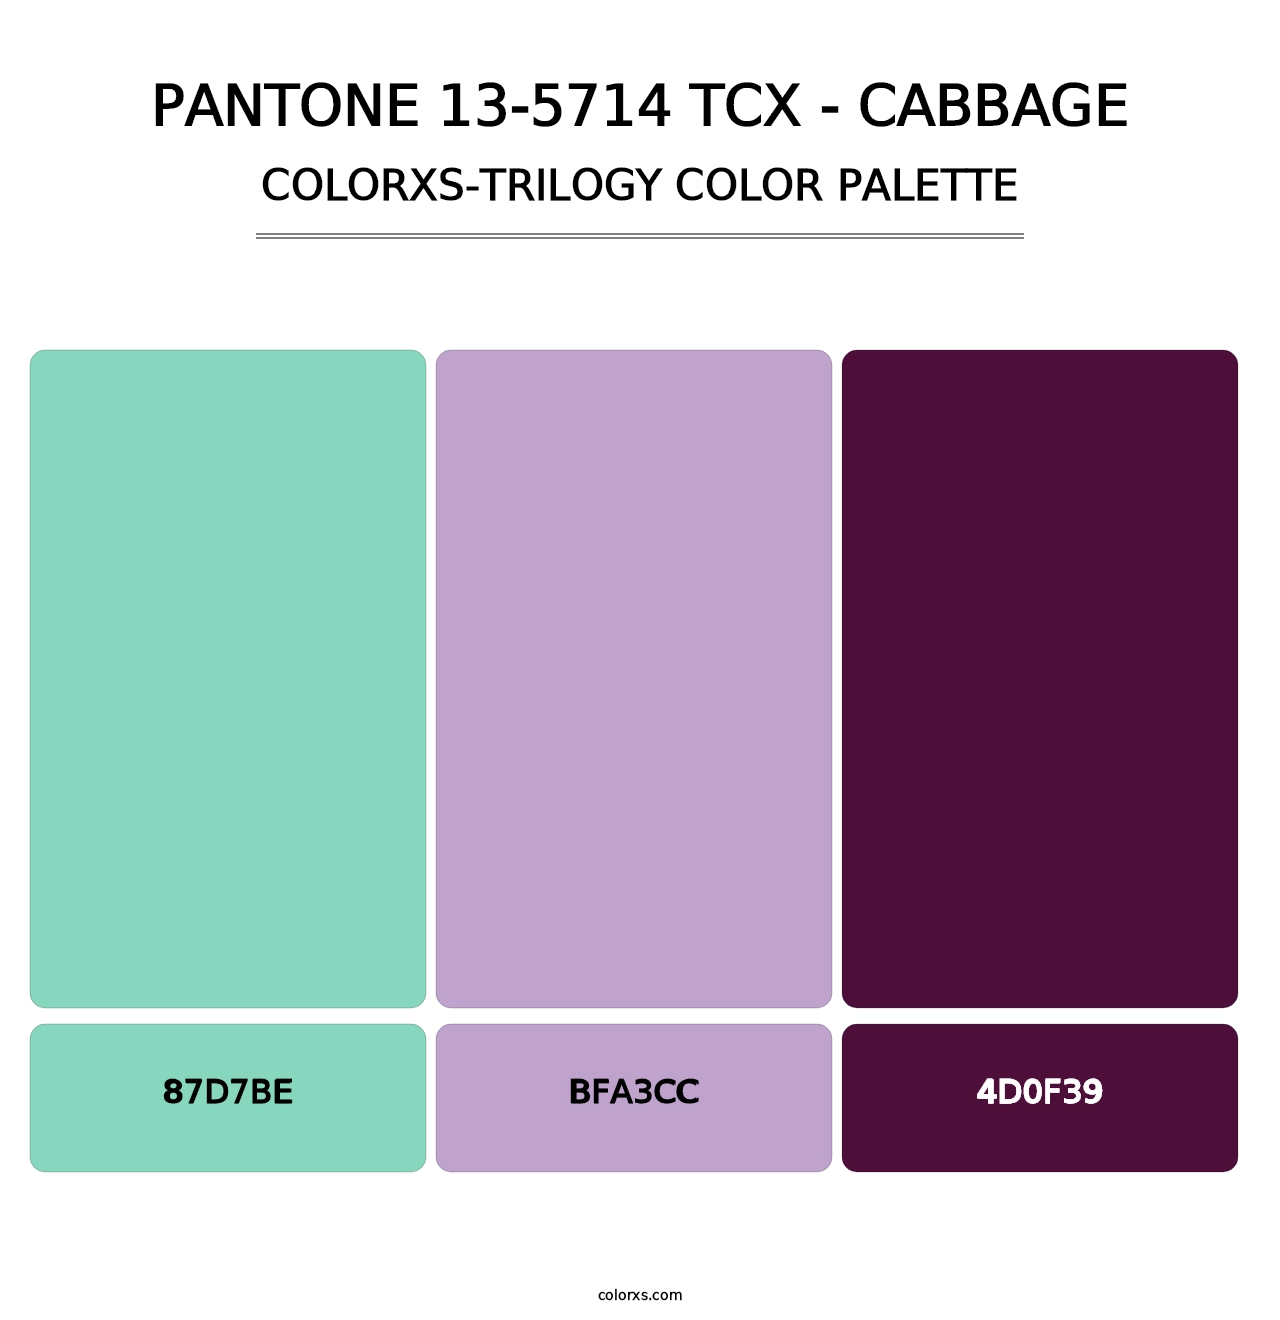 PANTONE 13-5714 TCX - Cabbage - Colorxs Trilogy Palette